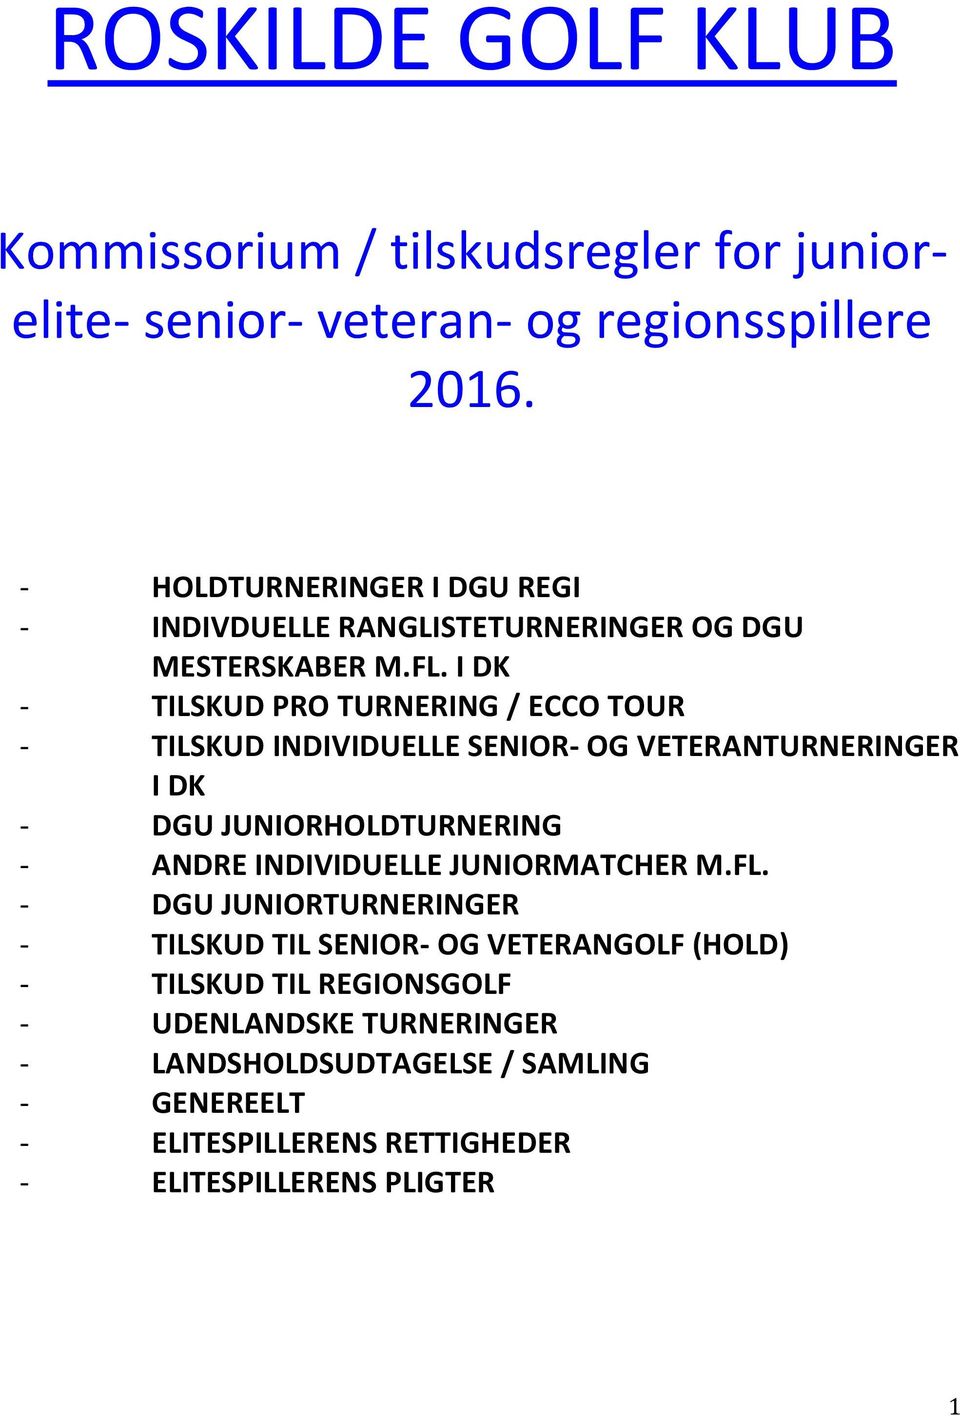 I DK - TILSKUD PRO TURNERING / ECCO TOUR - TILSKUD INDIVIDUELLE SENIOR- OG VETERANTURNERINGER I DK - DGU JUNIORHOLDTURNERING - ANDRE INDIVIDUELLE